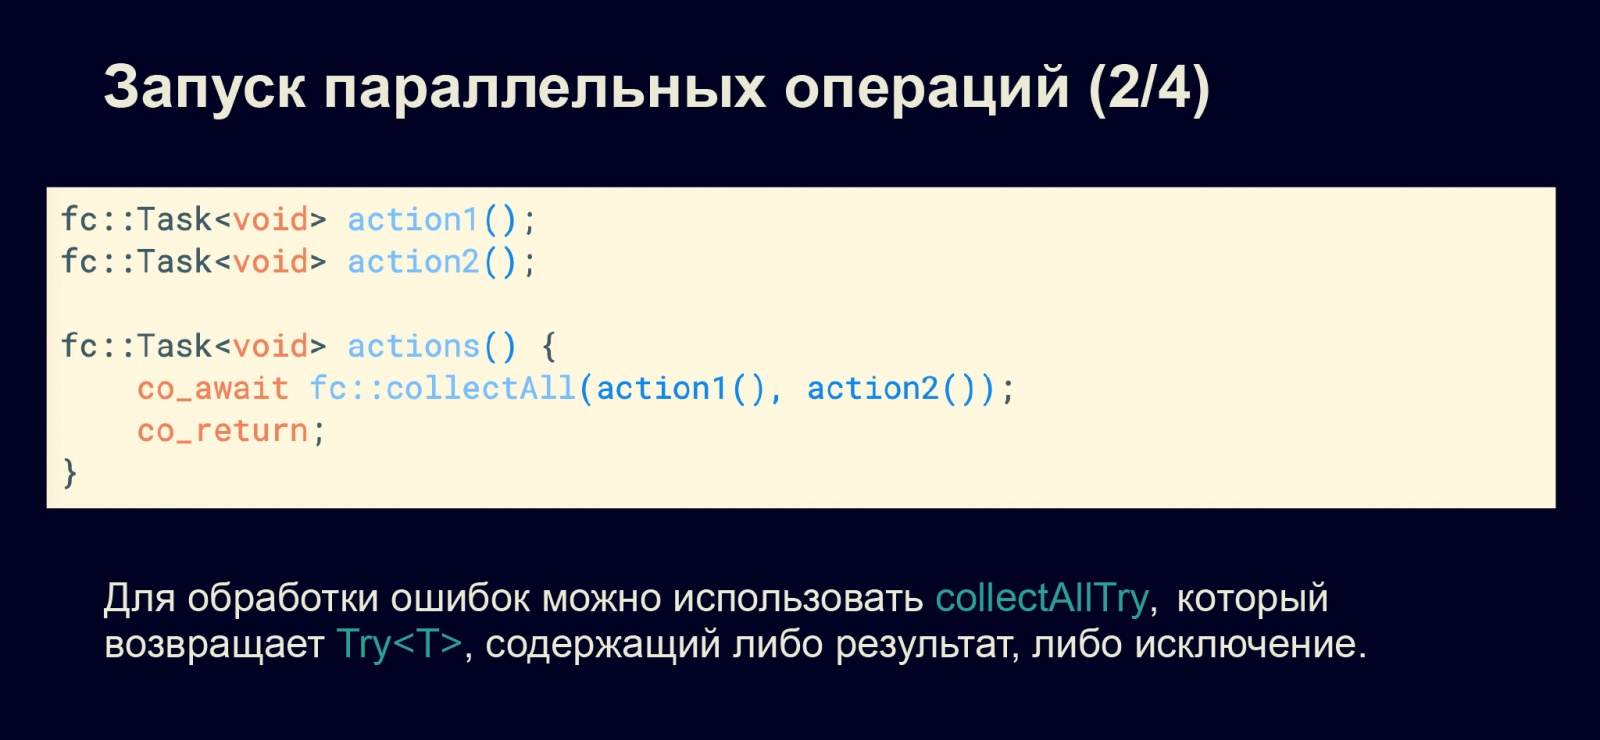 Асинхронность в С++20. Доклад в Яндексе - 15